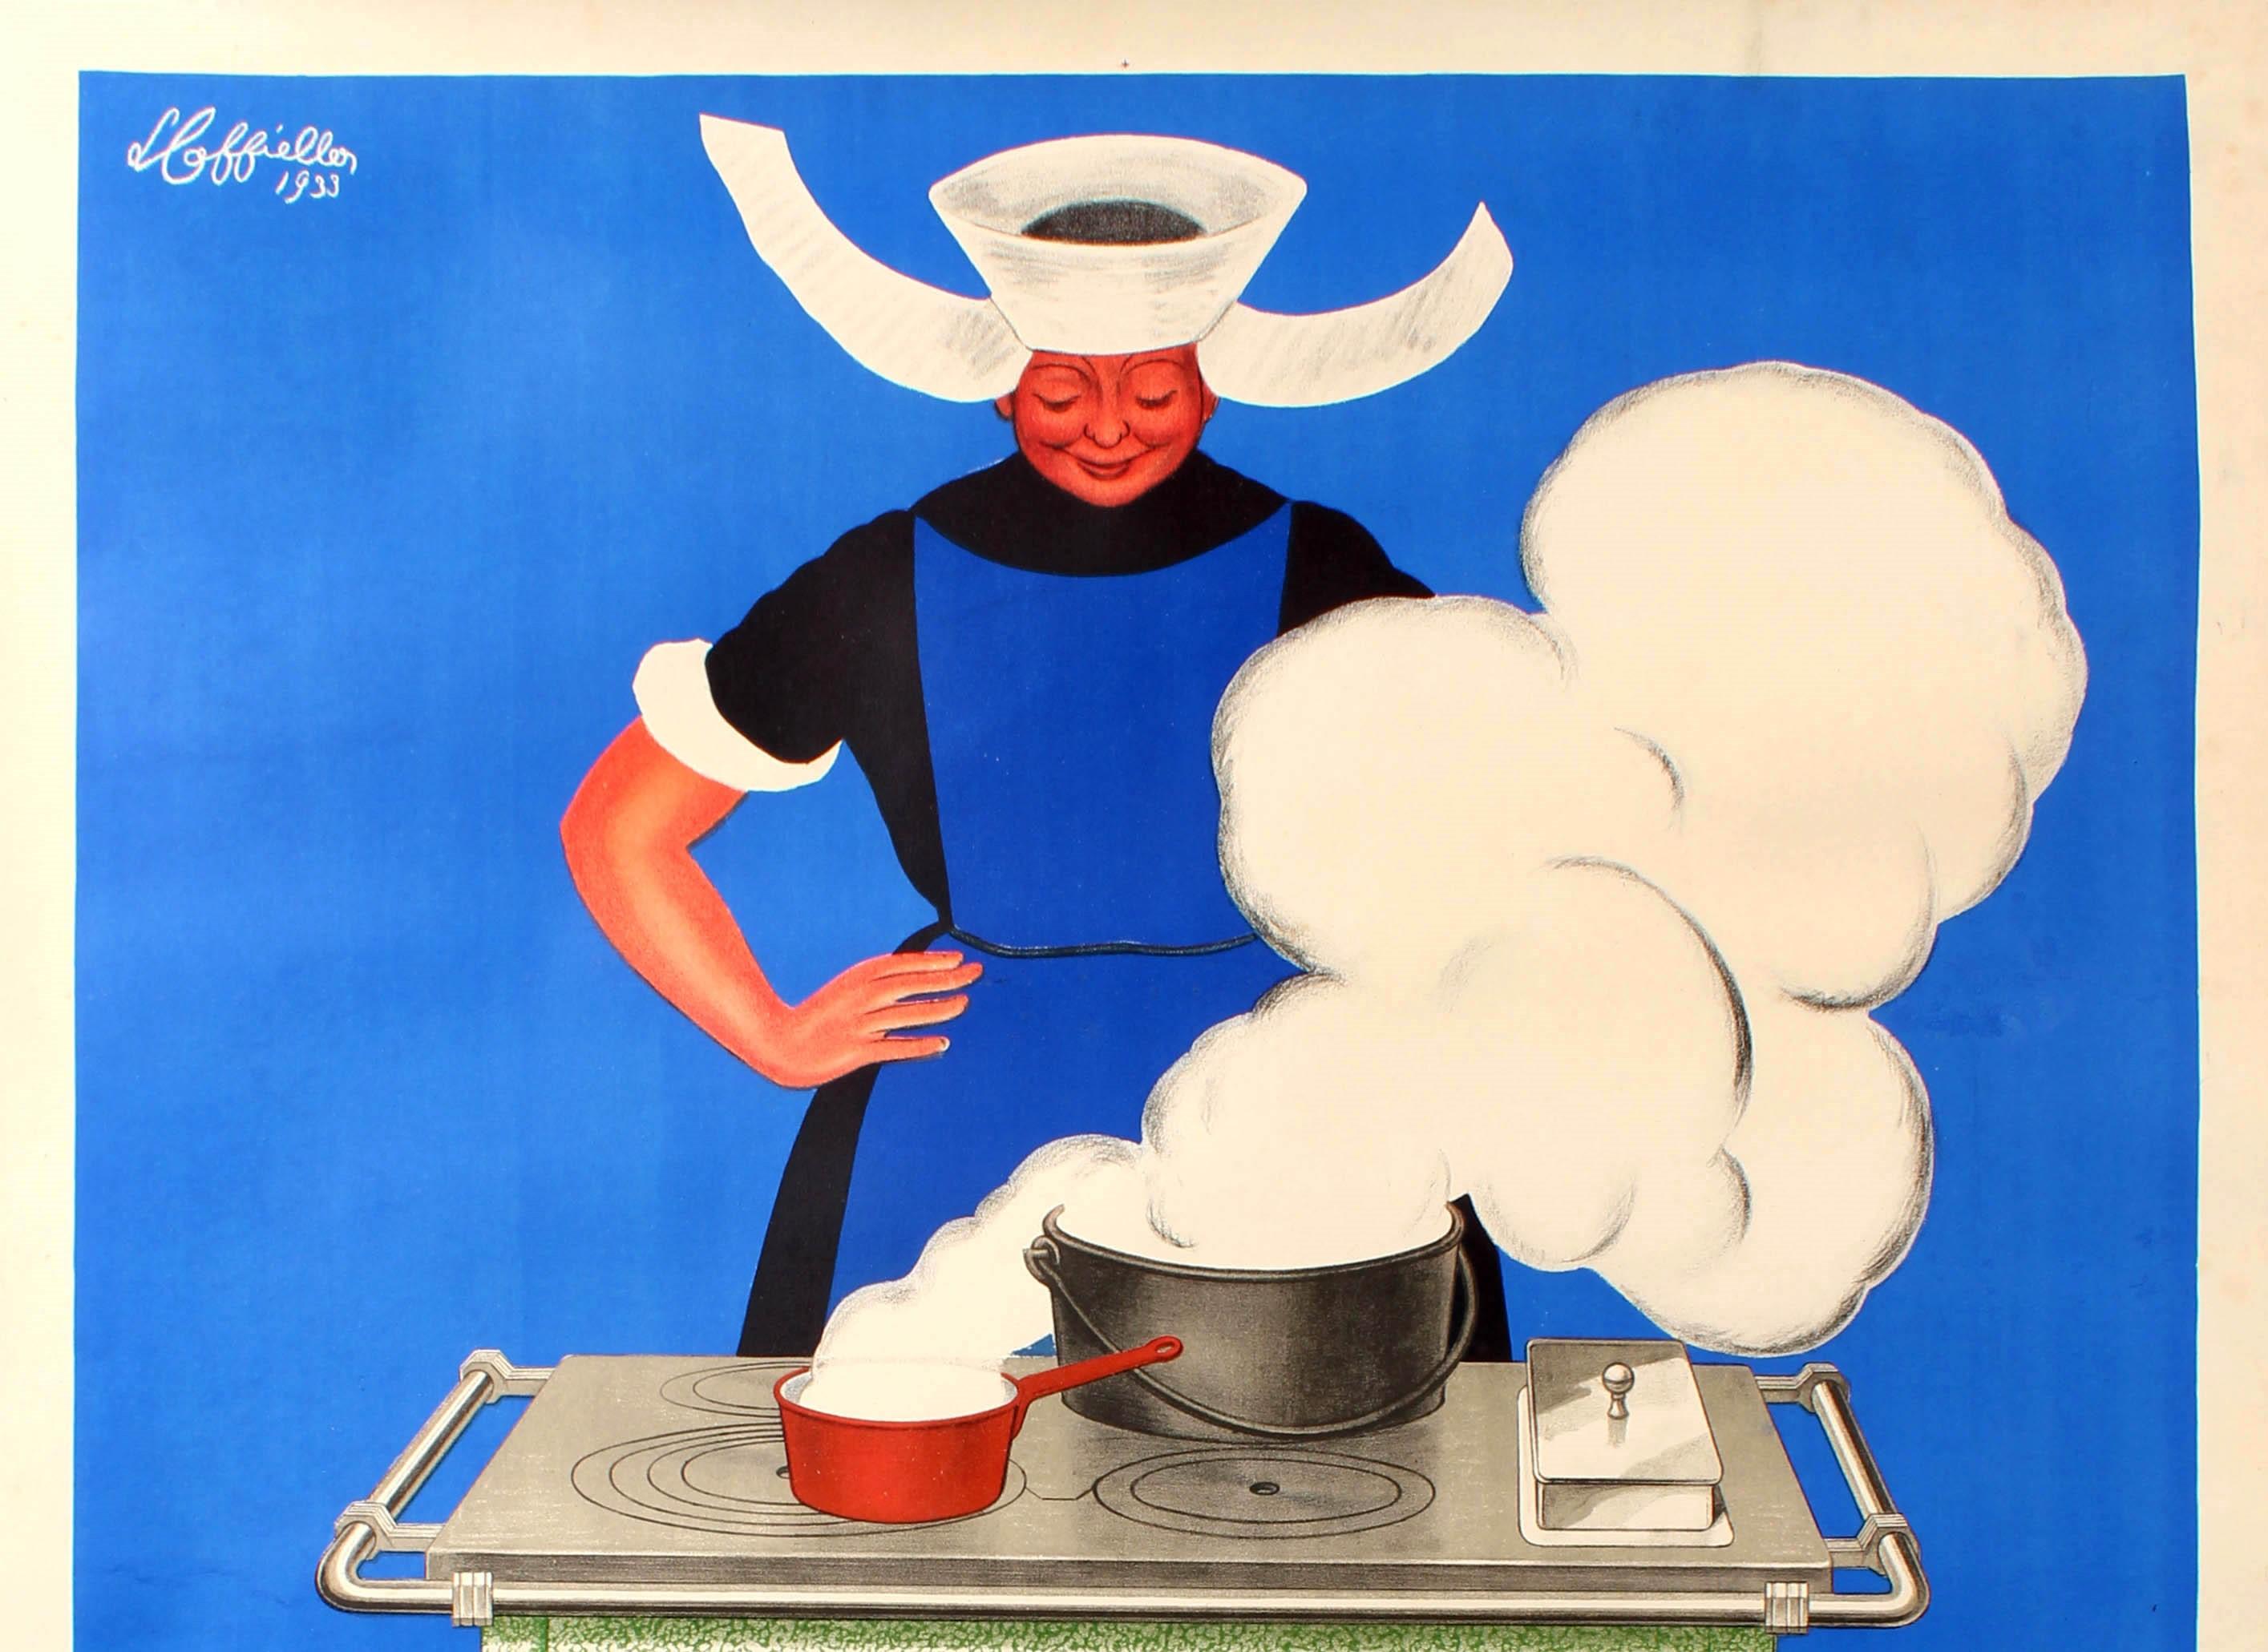 Large Original Vintage Poster By Cappiello Baudin La Cuisiniere des Cuisinieres - Print by Leonetto Cappiello